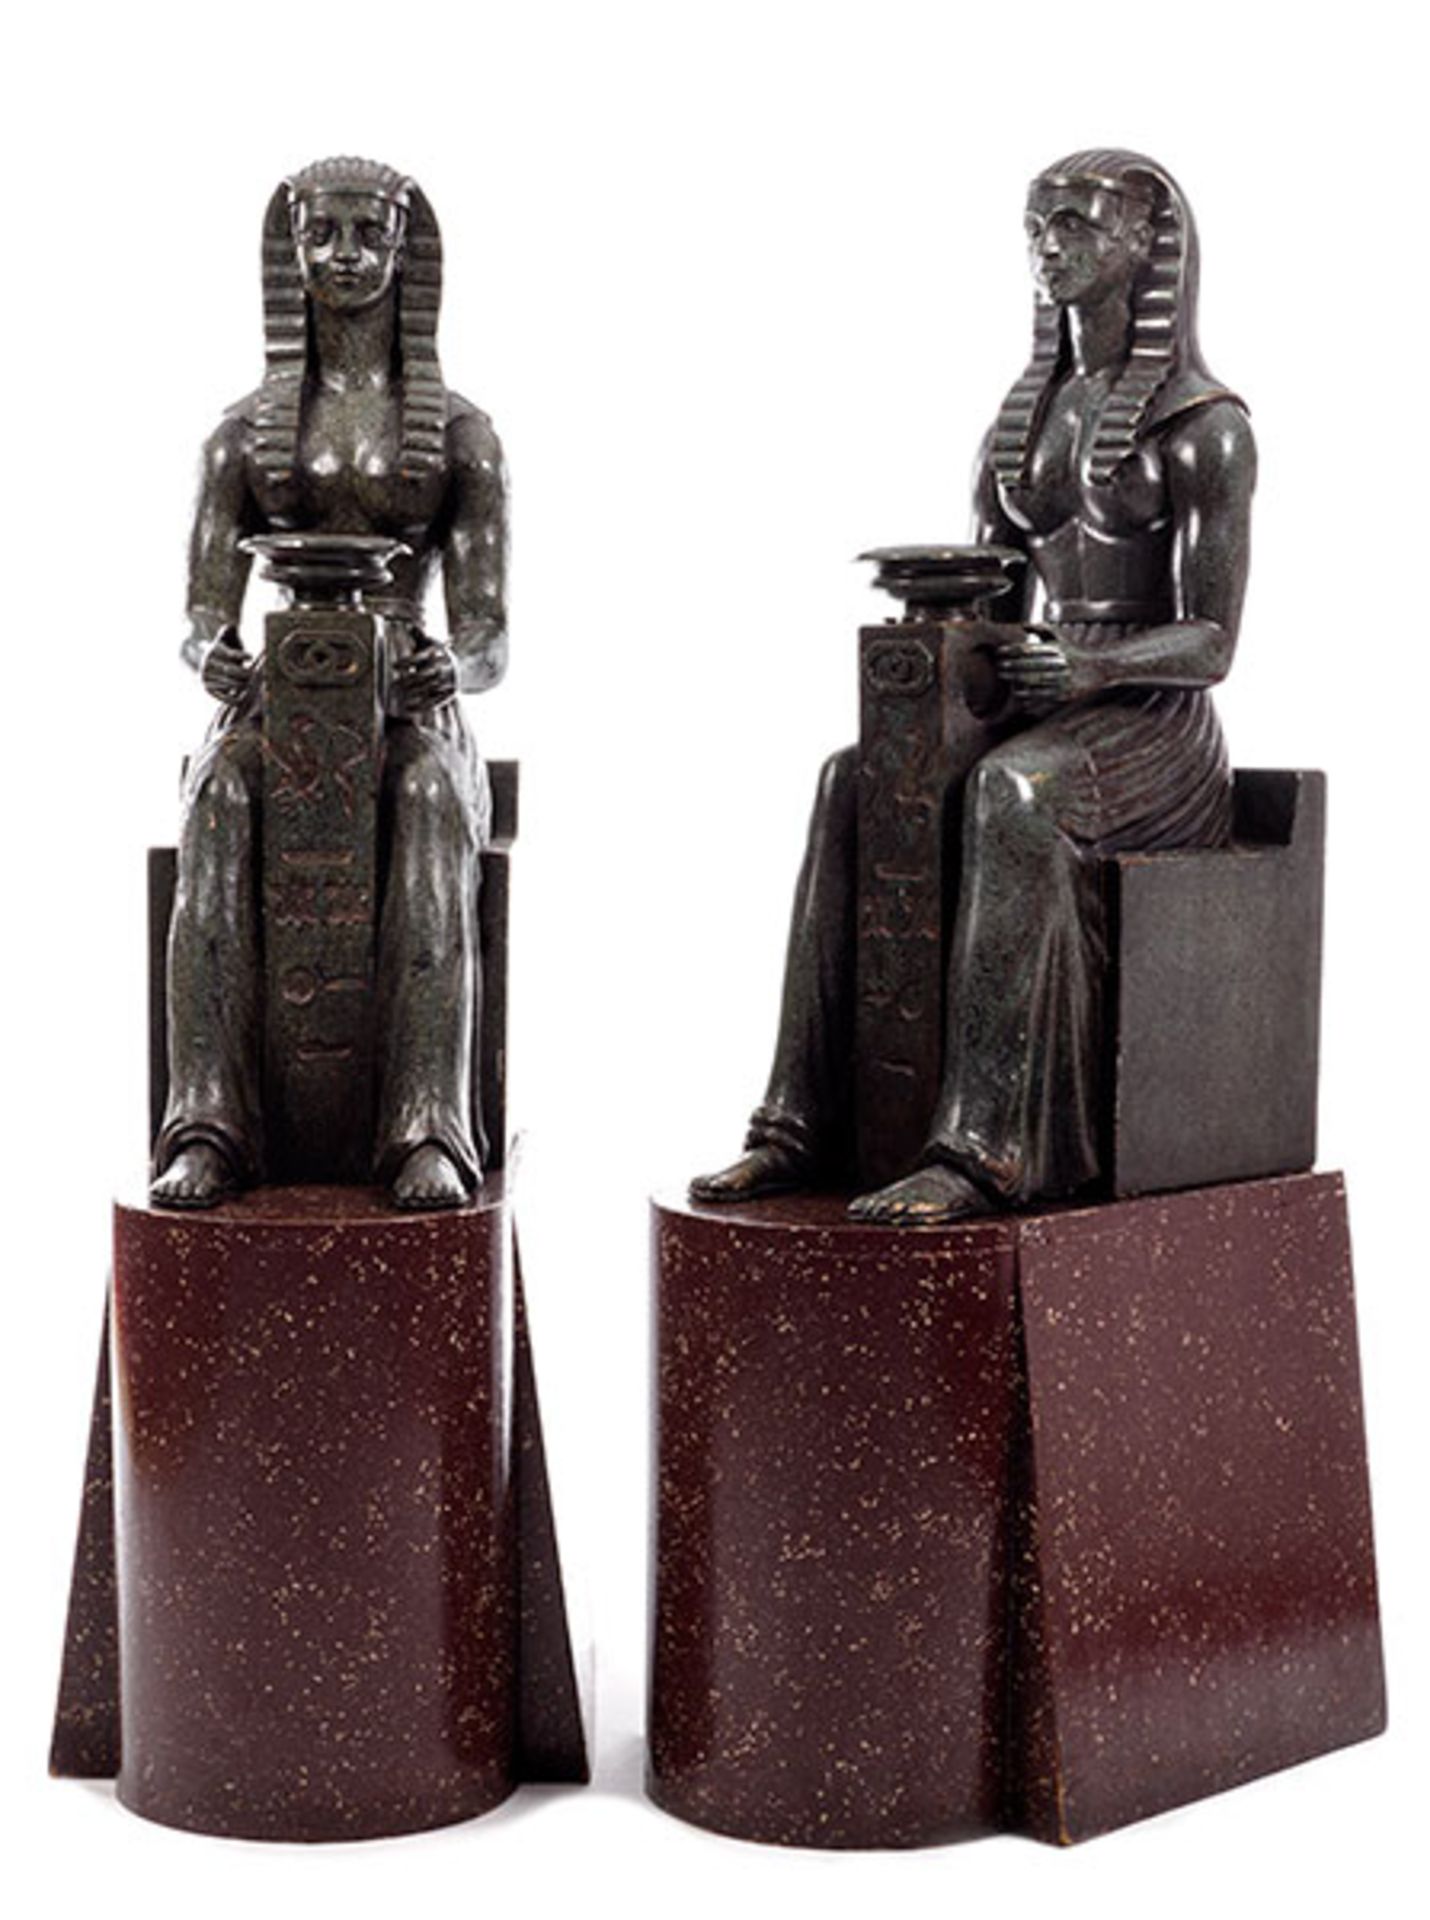 Zwei ägyptische Gottheiten Höhe mit Sockel: 163 cm. Ohne Sockel: 104 cm. Holz, geschnitzt,